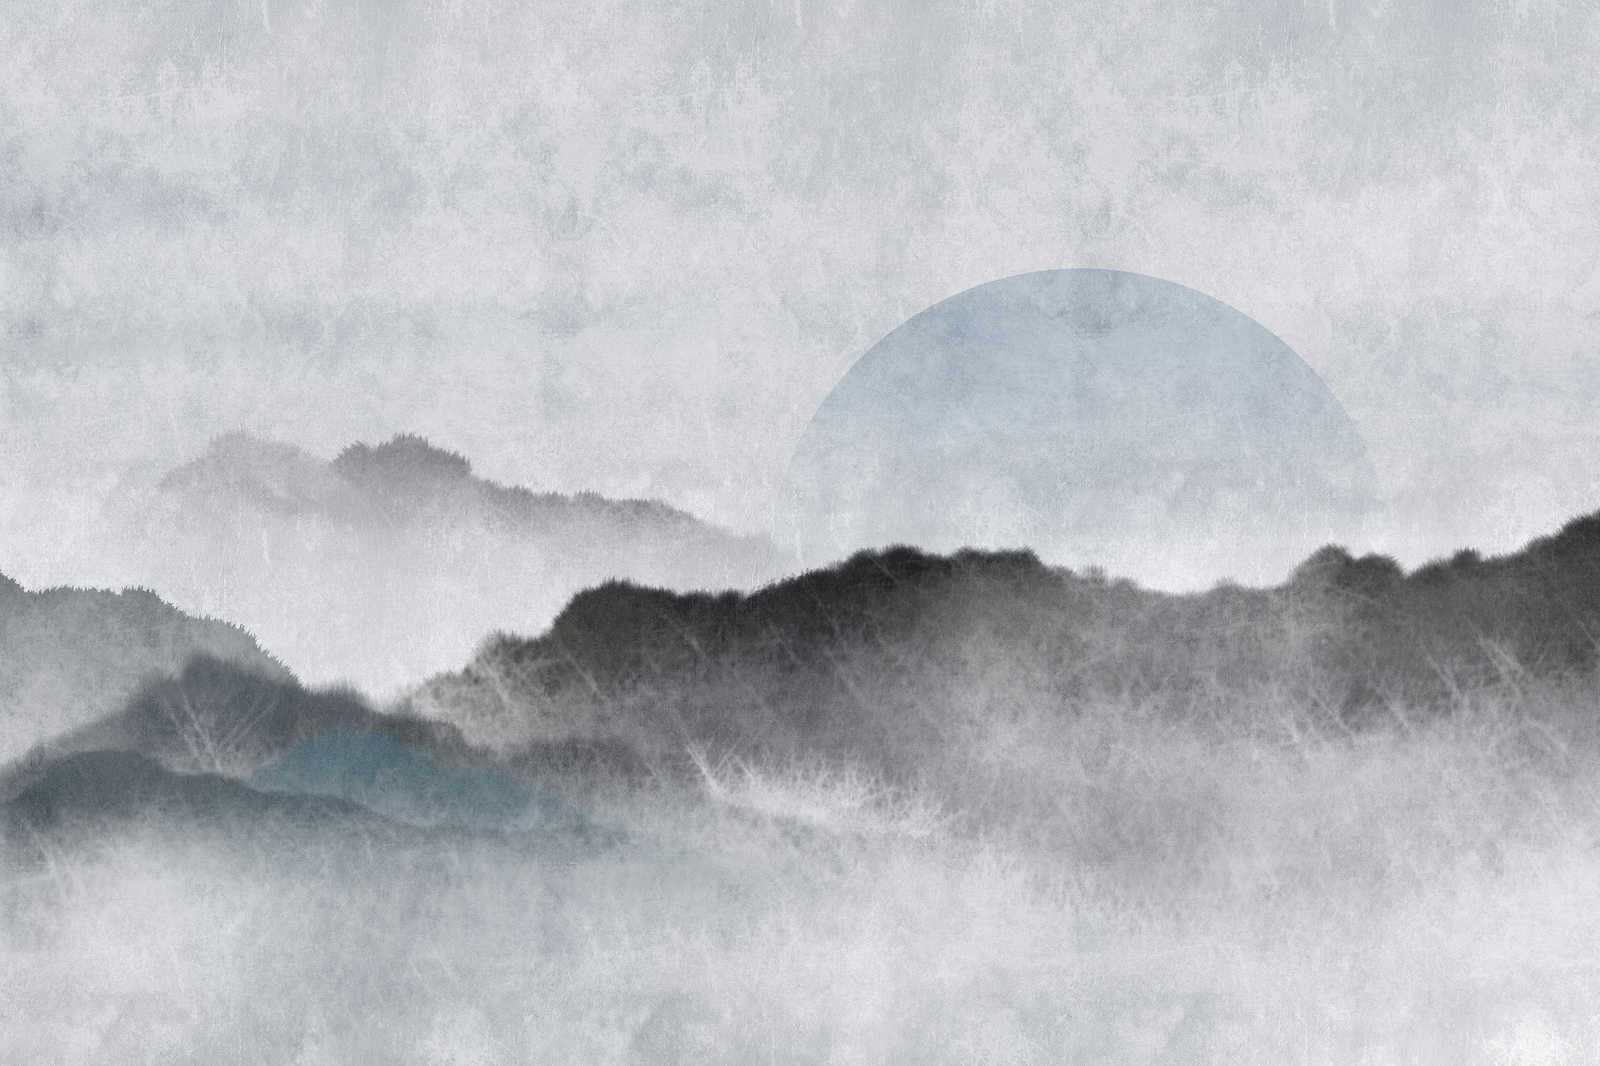             Akaishi 2 - Quadro su tela Tipo asiatica Paesaggio di montagna, grigio e bianco - 0,90 m x 0,60 m
        